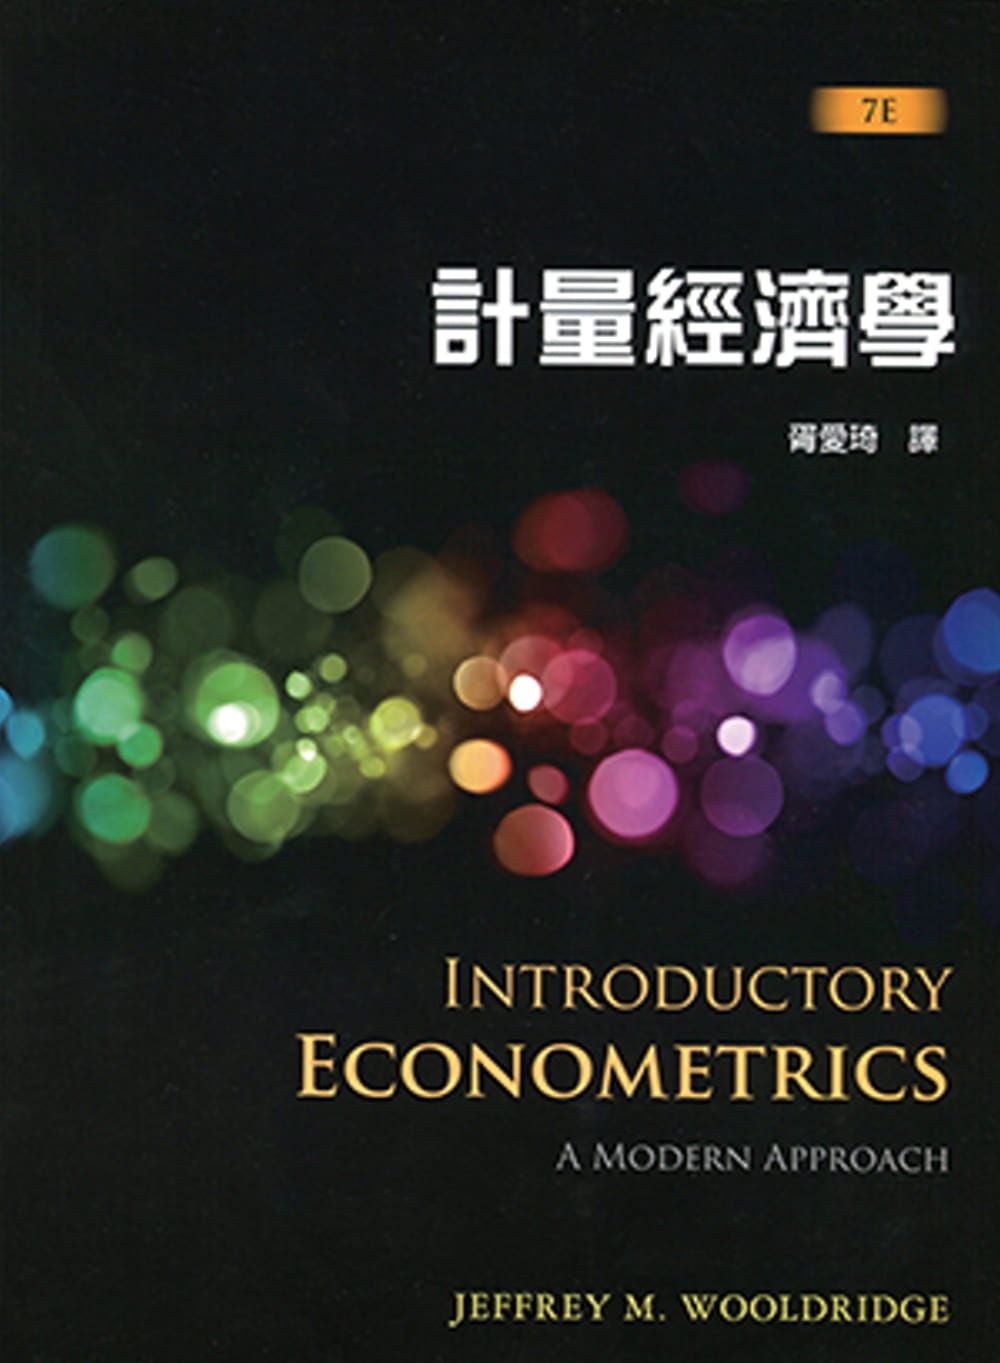 計量經濟學（7版）